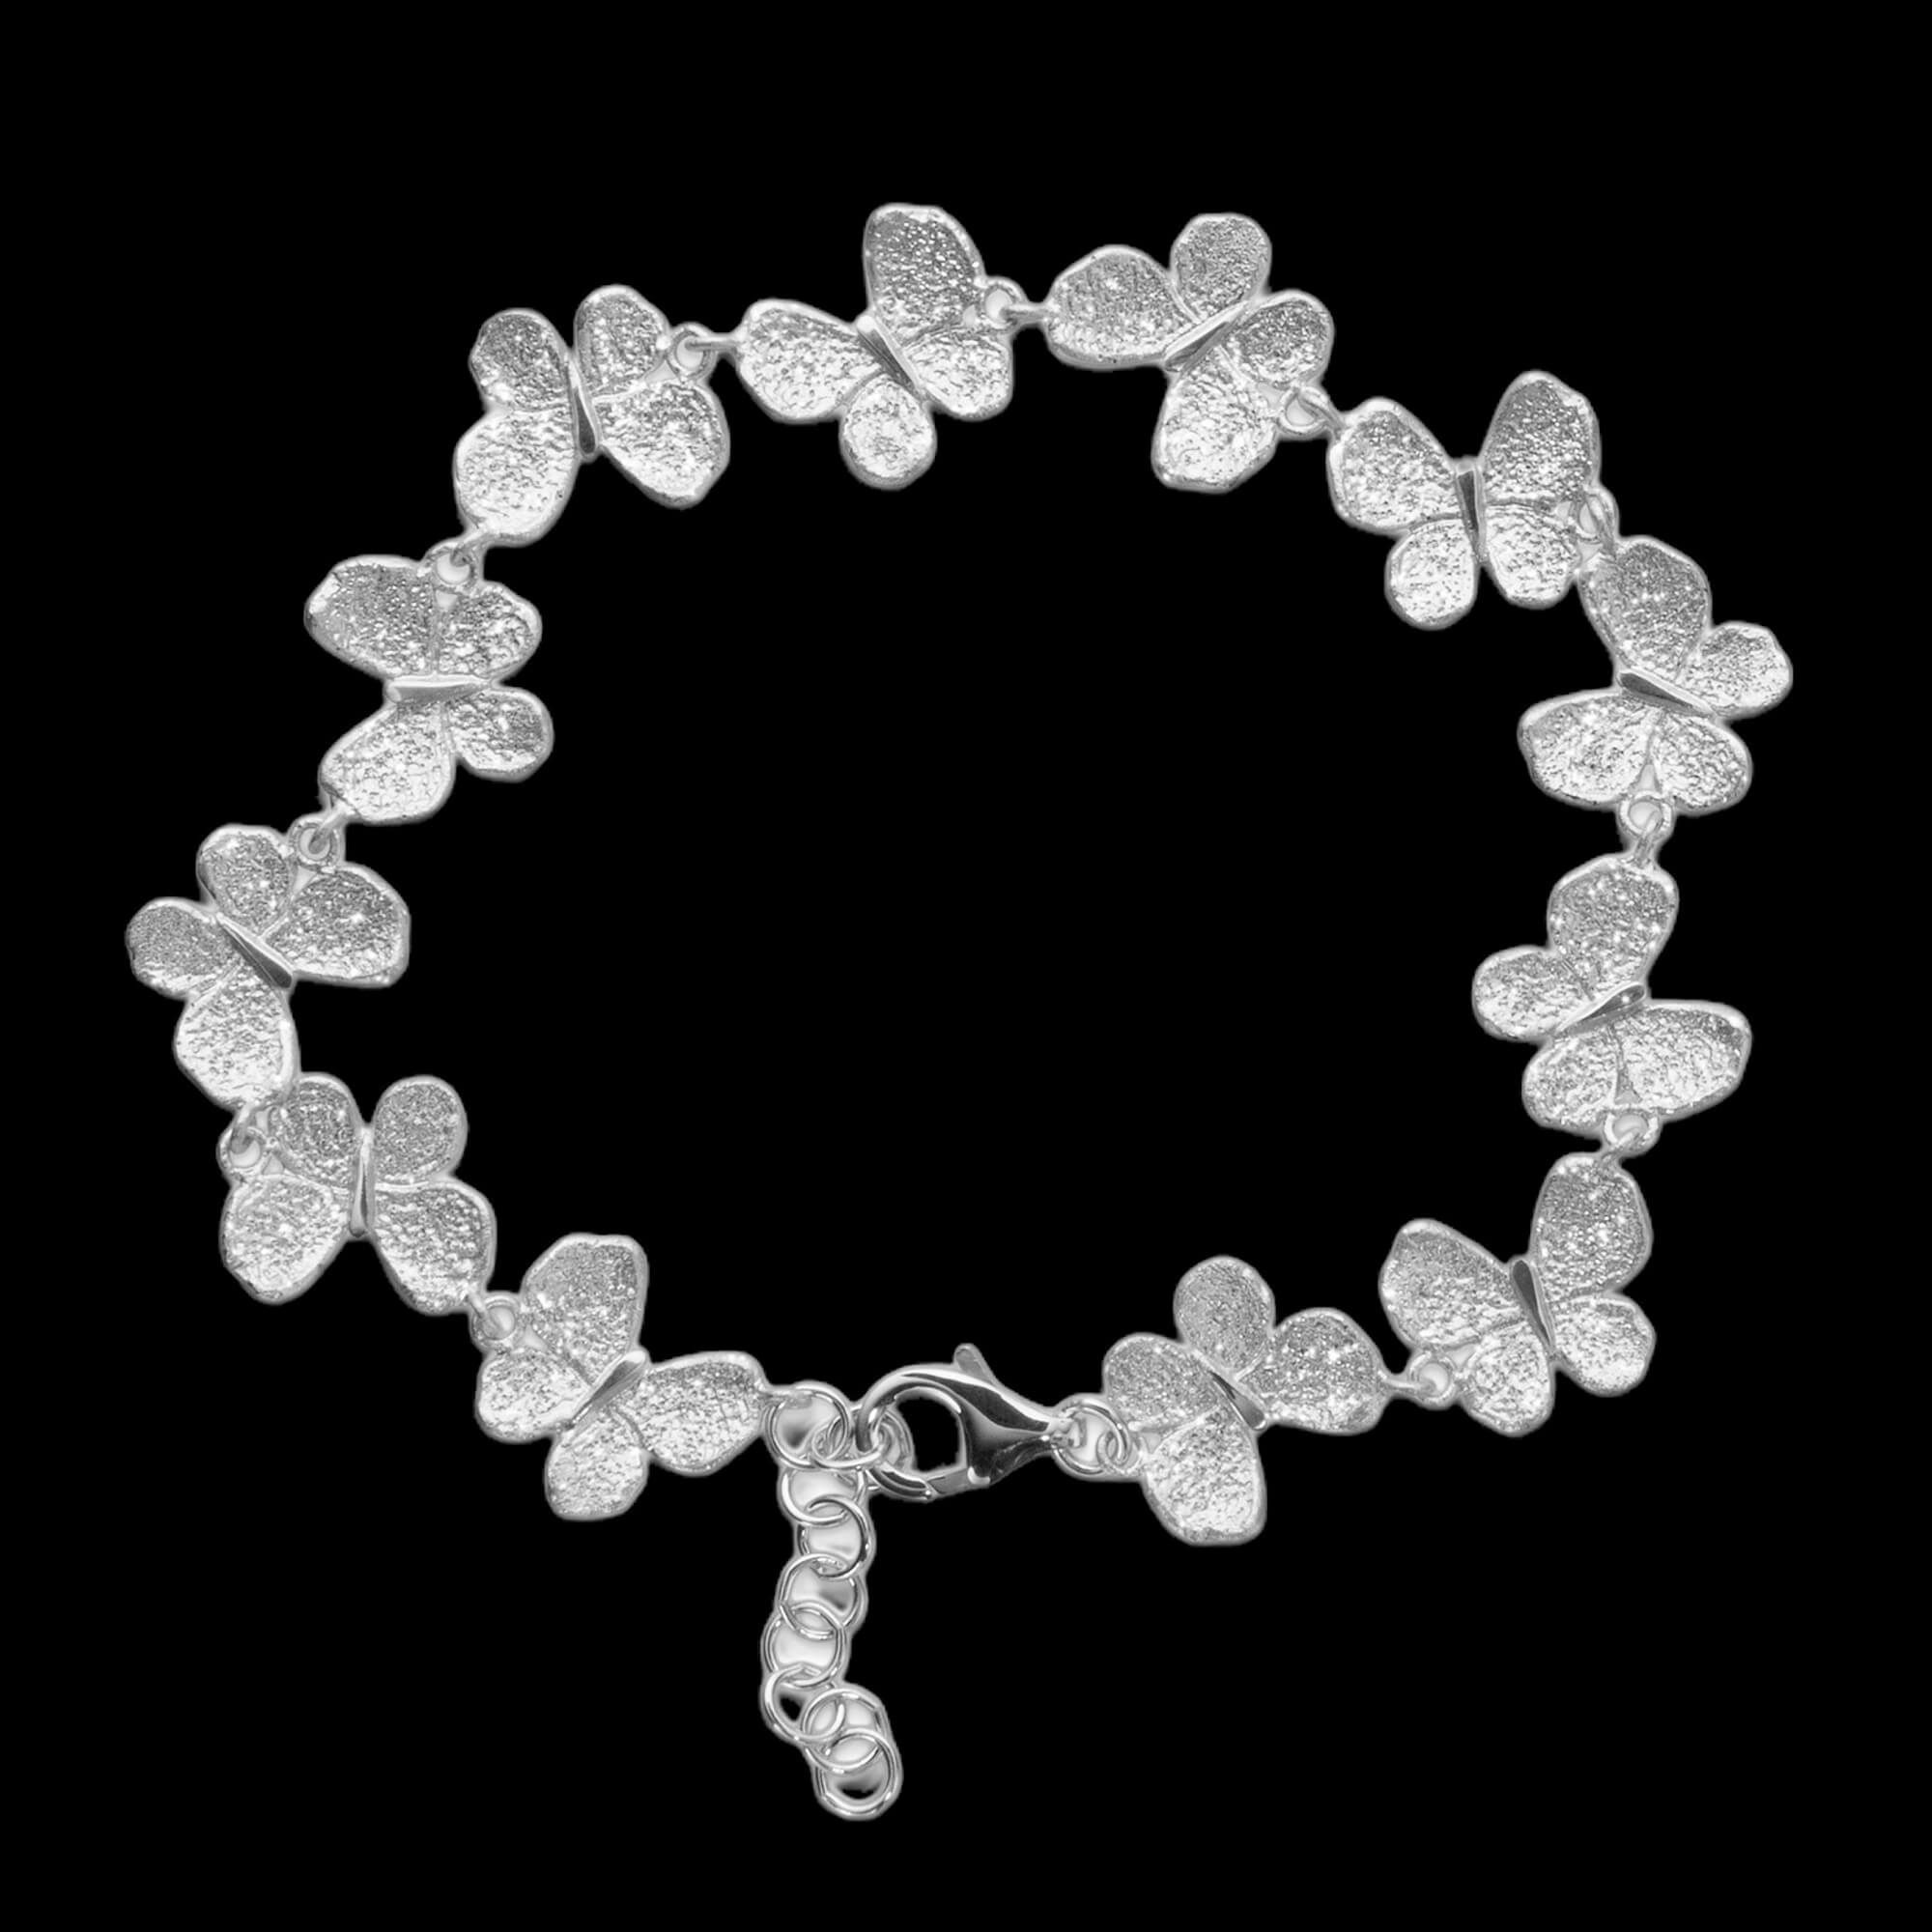 Silver bracelet of butterflies